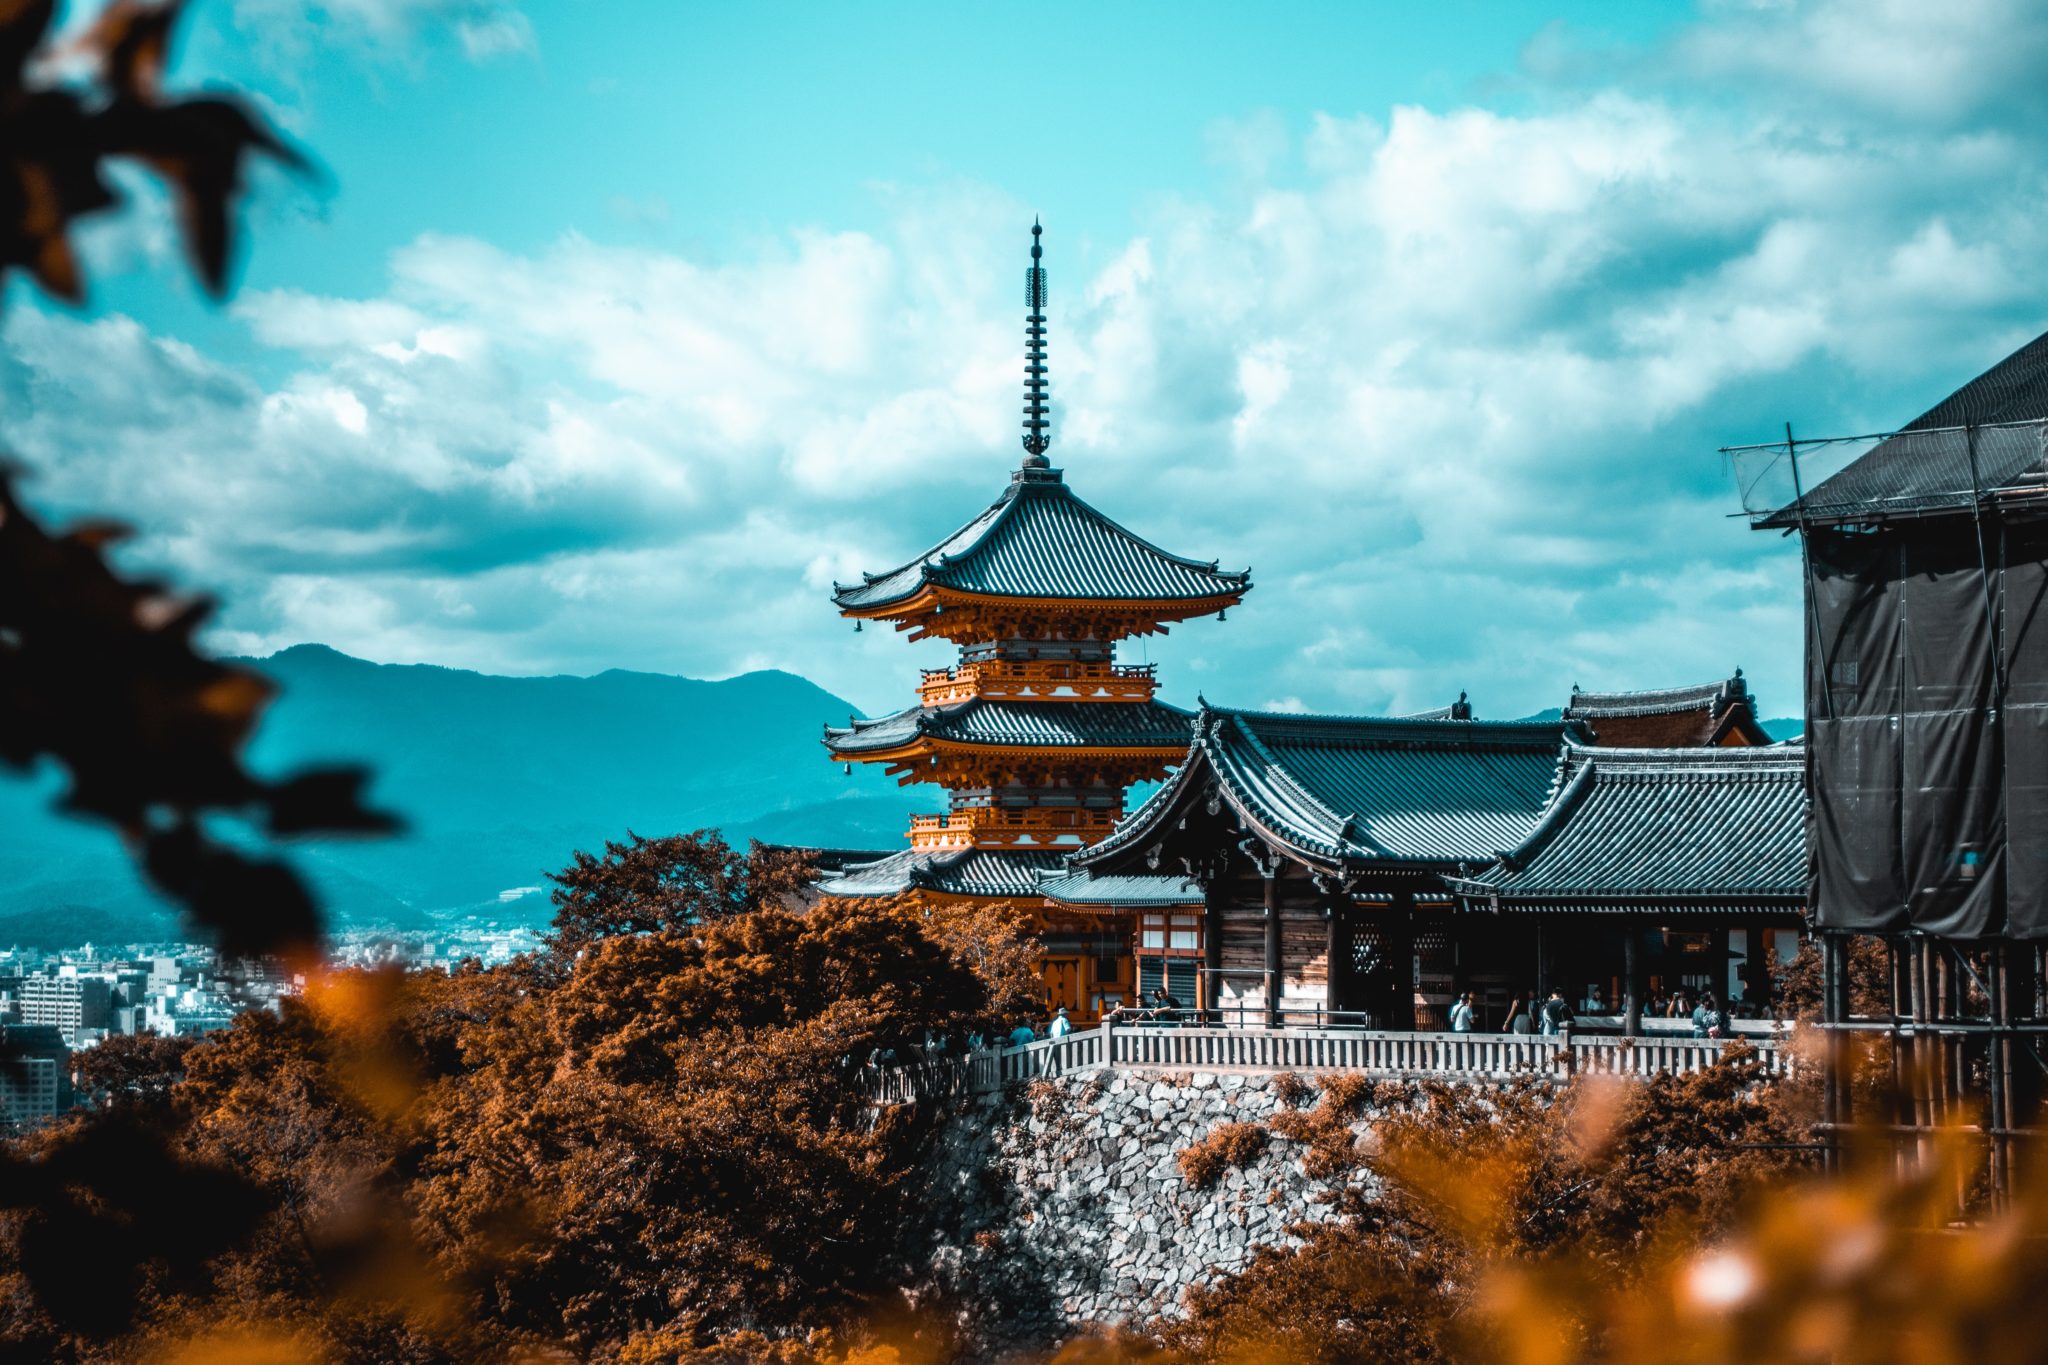 świątynia Kiyomizu-dera w Kioto, Japonia, świątynia, widok na miasto, Kioto, zwiedzanie świątyni, czerwona świątynia, buddyjski kompleks świątynny